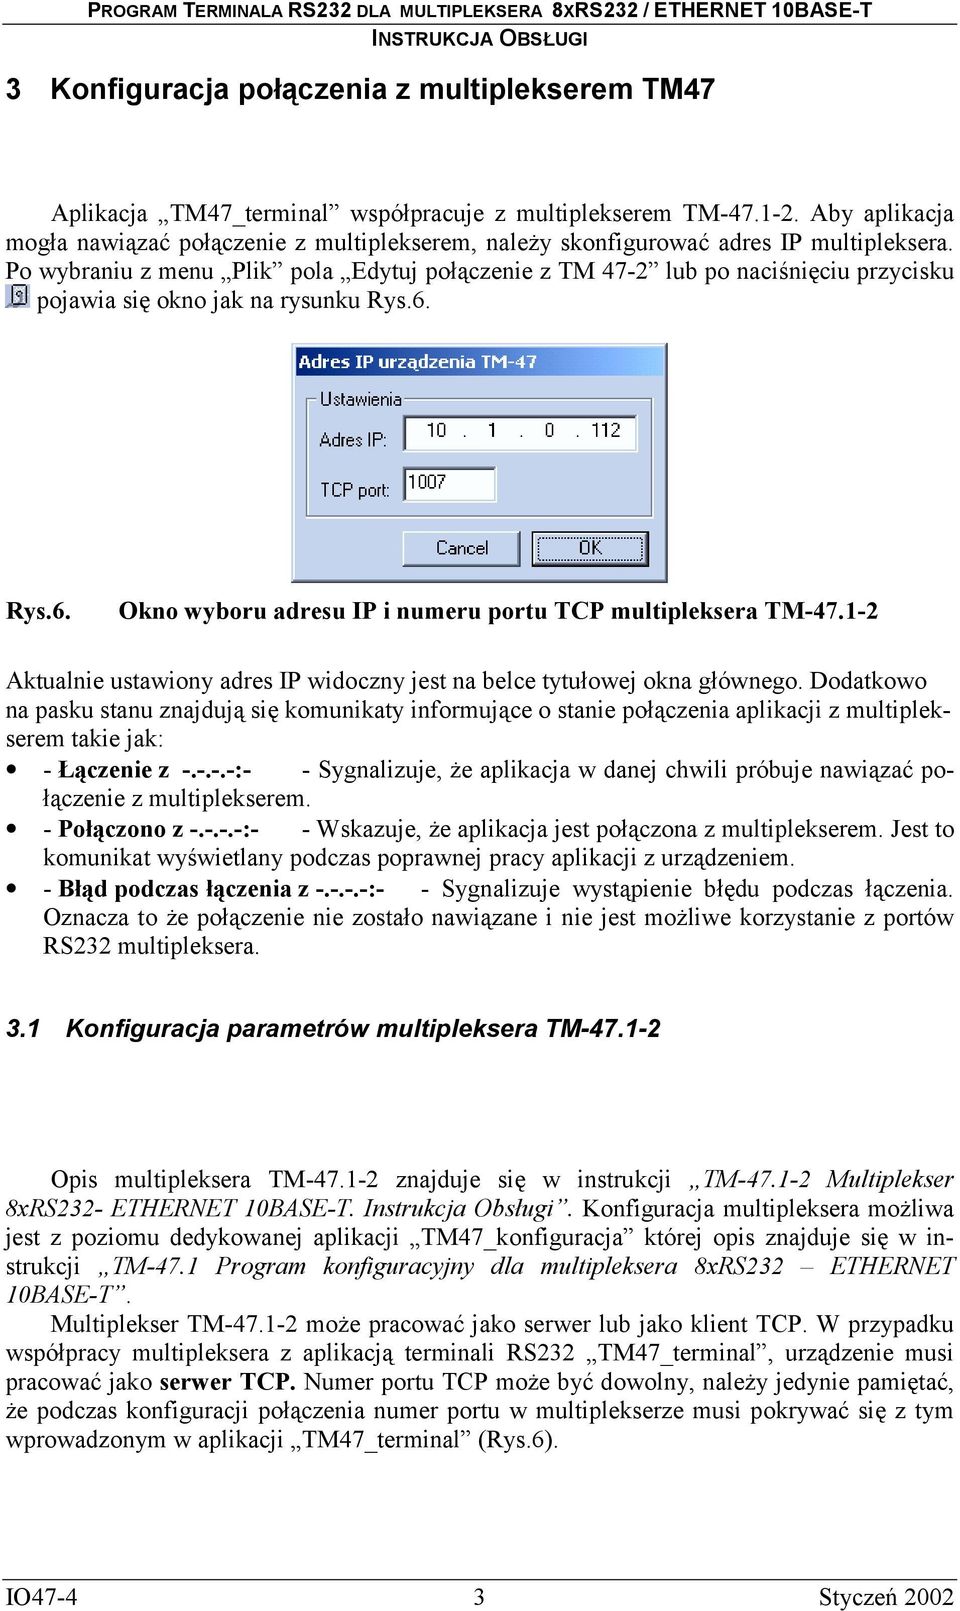 Po wybraniu z menu Plik pola Edytuj połączenie z TM 47-2 lub po naciśnięciu przycisku pojawia się okno jak na rysunku Rys.6. Rys.6. Okno wyboru adresu IP i numeru portu TCP multipleksera TM-47.